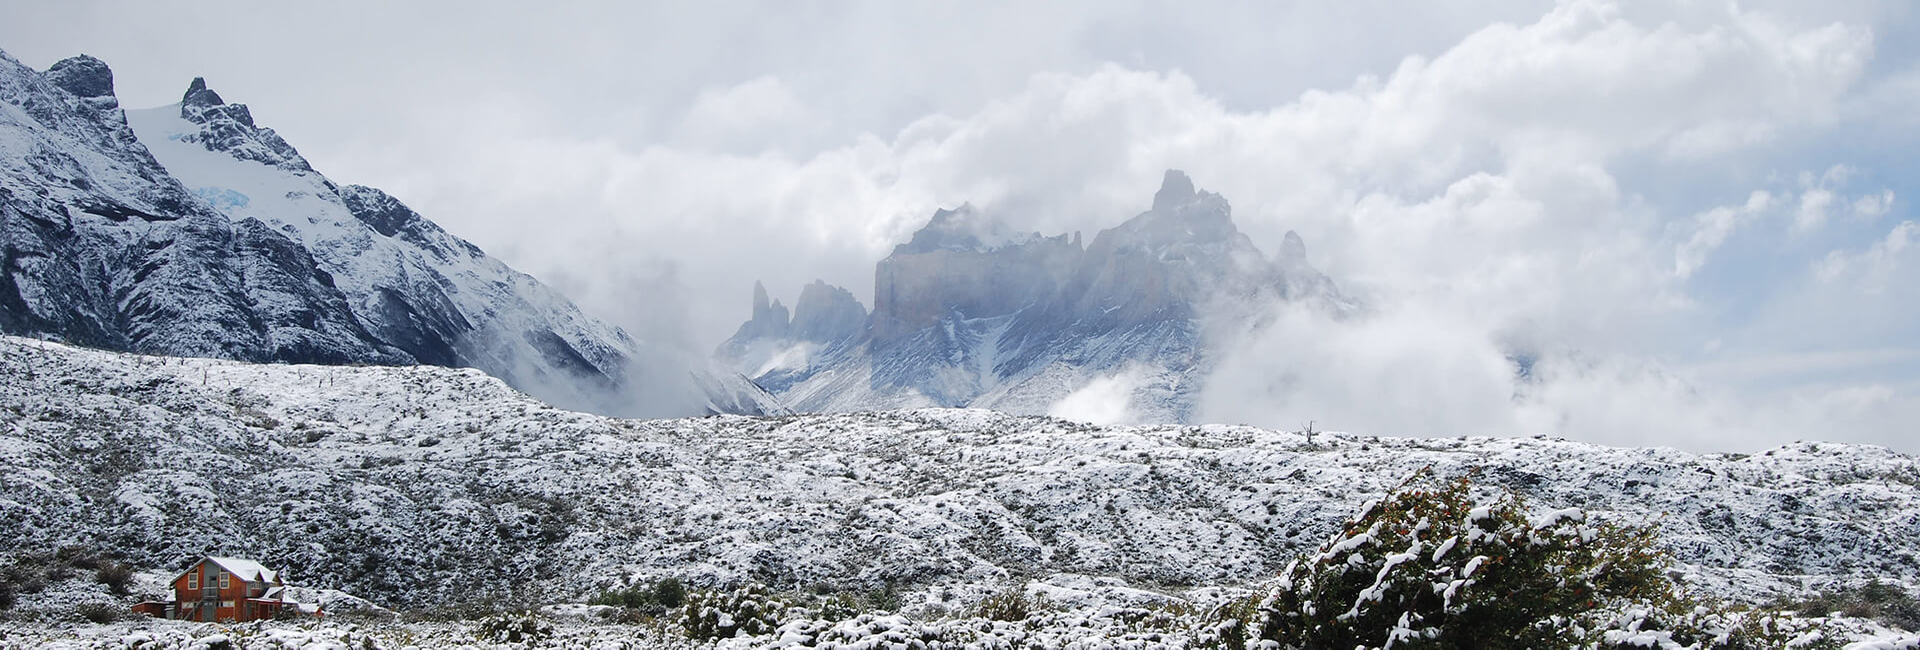 Torres del Paine in Winter